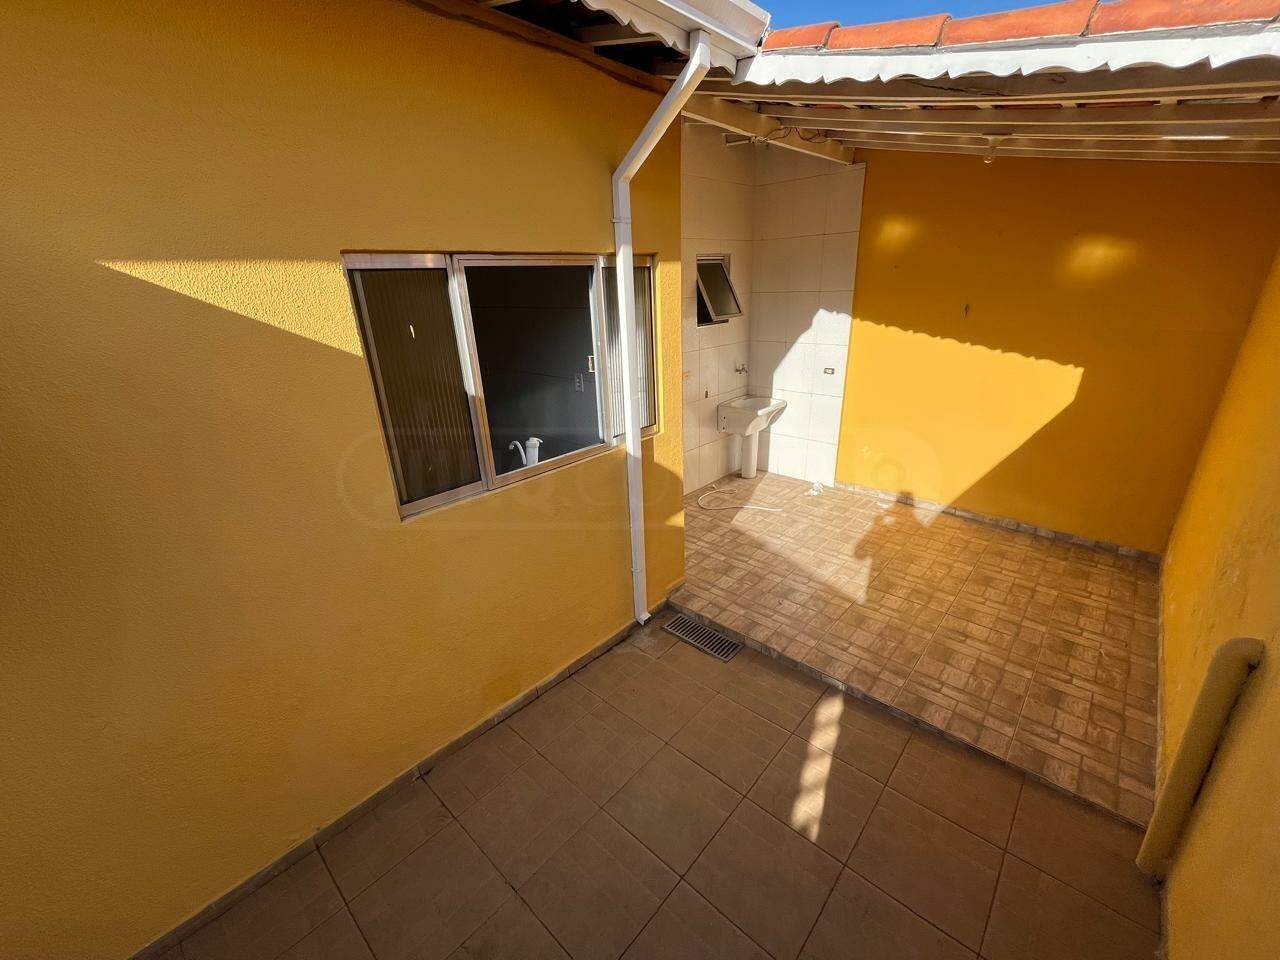 Casa para alugar, 1 quarto, no bairro Santa Terezinha em Piracicaba - SP